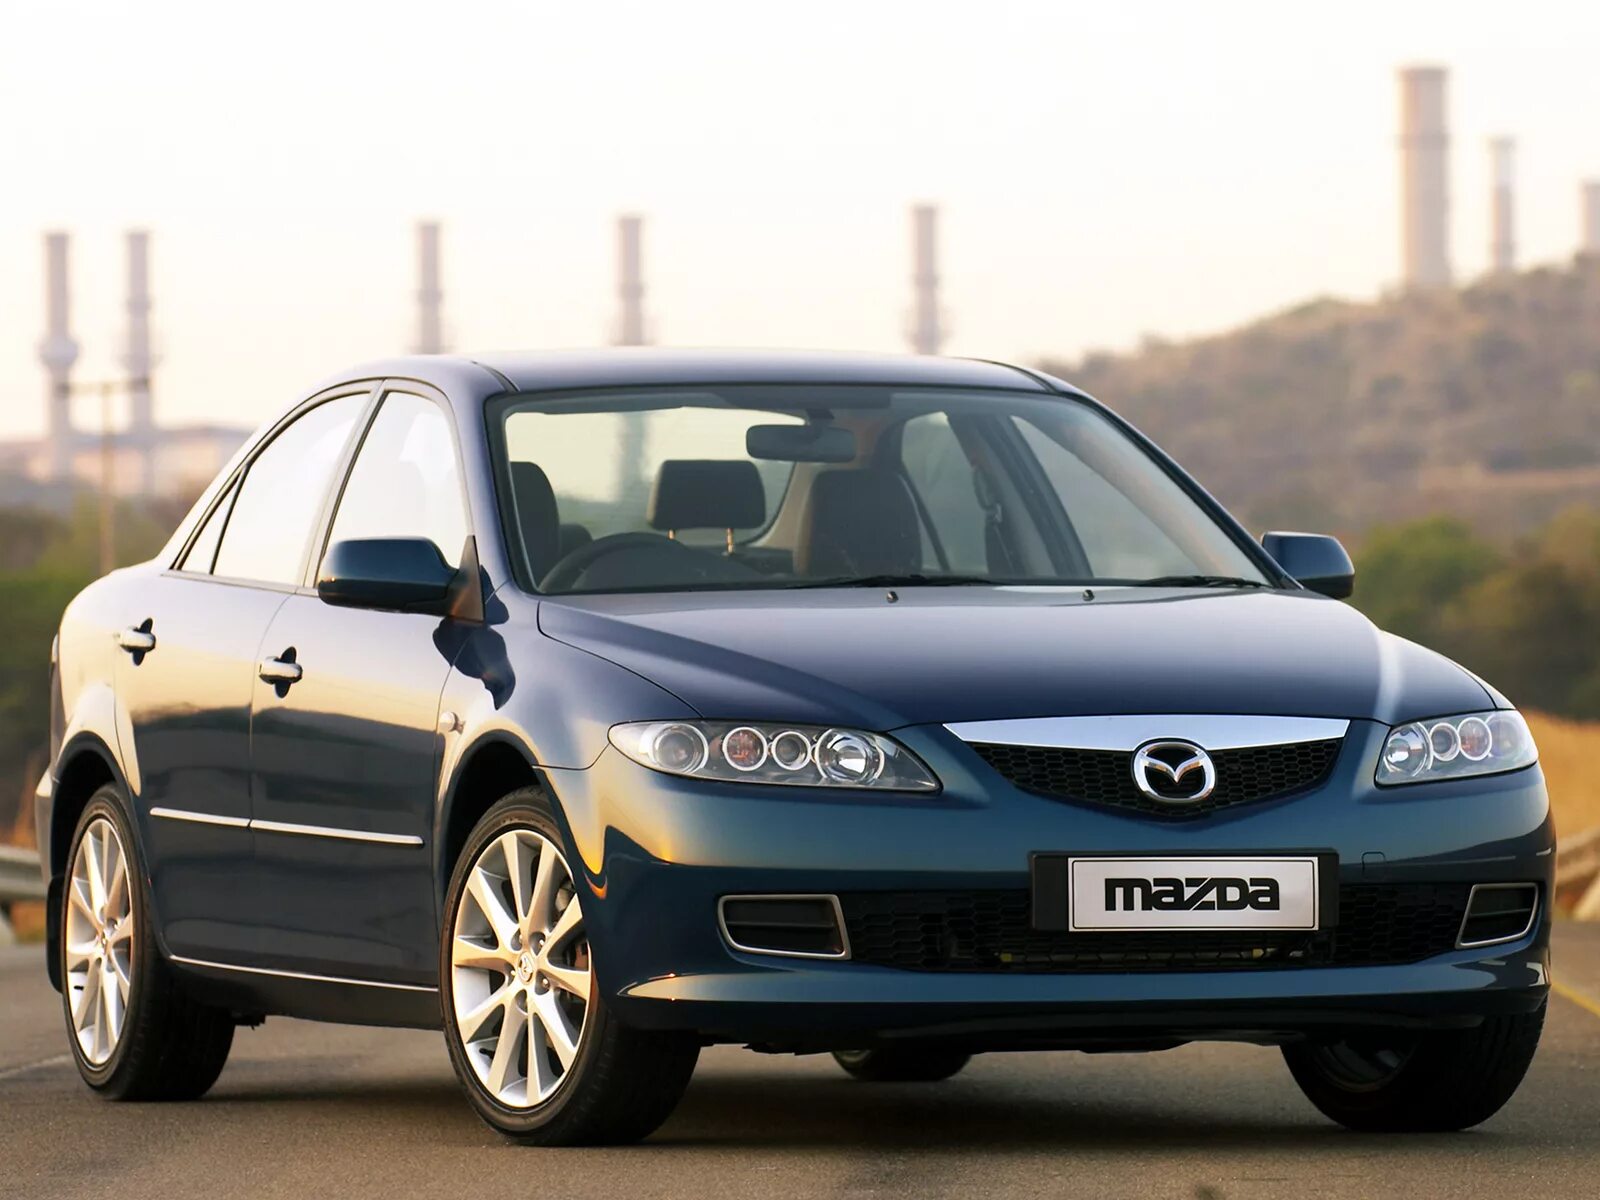 Mazda 6 gg. Mazda 6 gg 2005. Mazda 6 gg 2002. Мазда 6 седан 2005. И 2006 г 2005 год